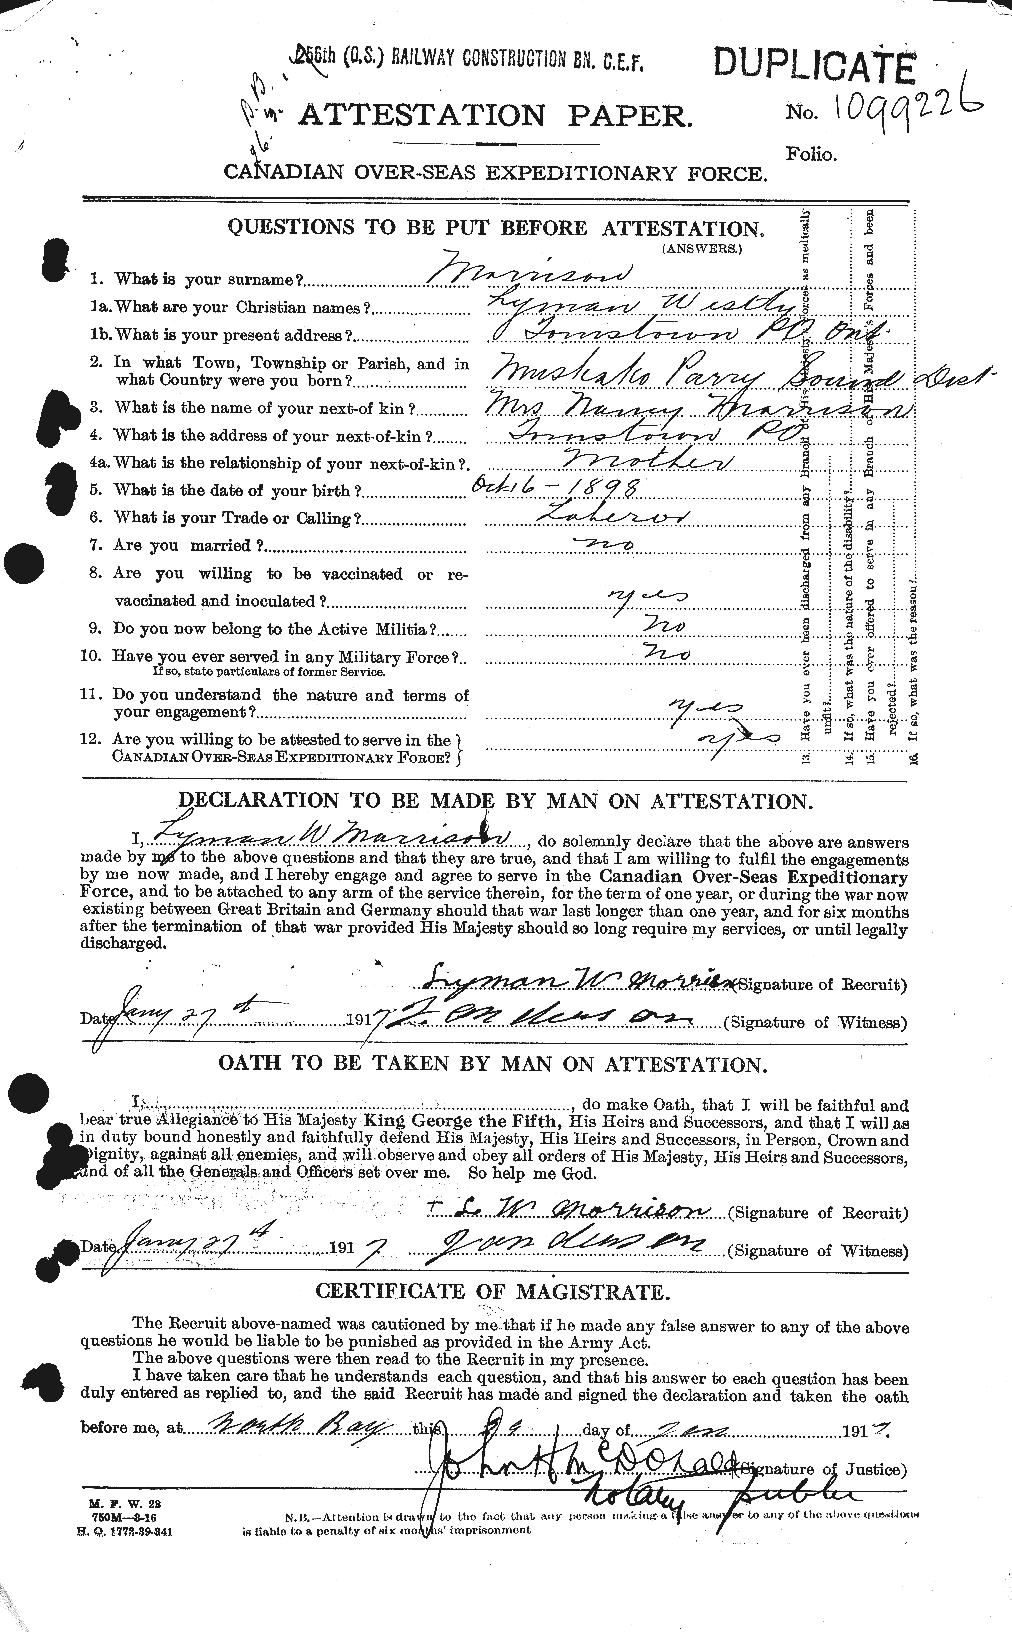 Dossiers du Personnel de la Première Guerre mondiale - CEC 507148a